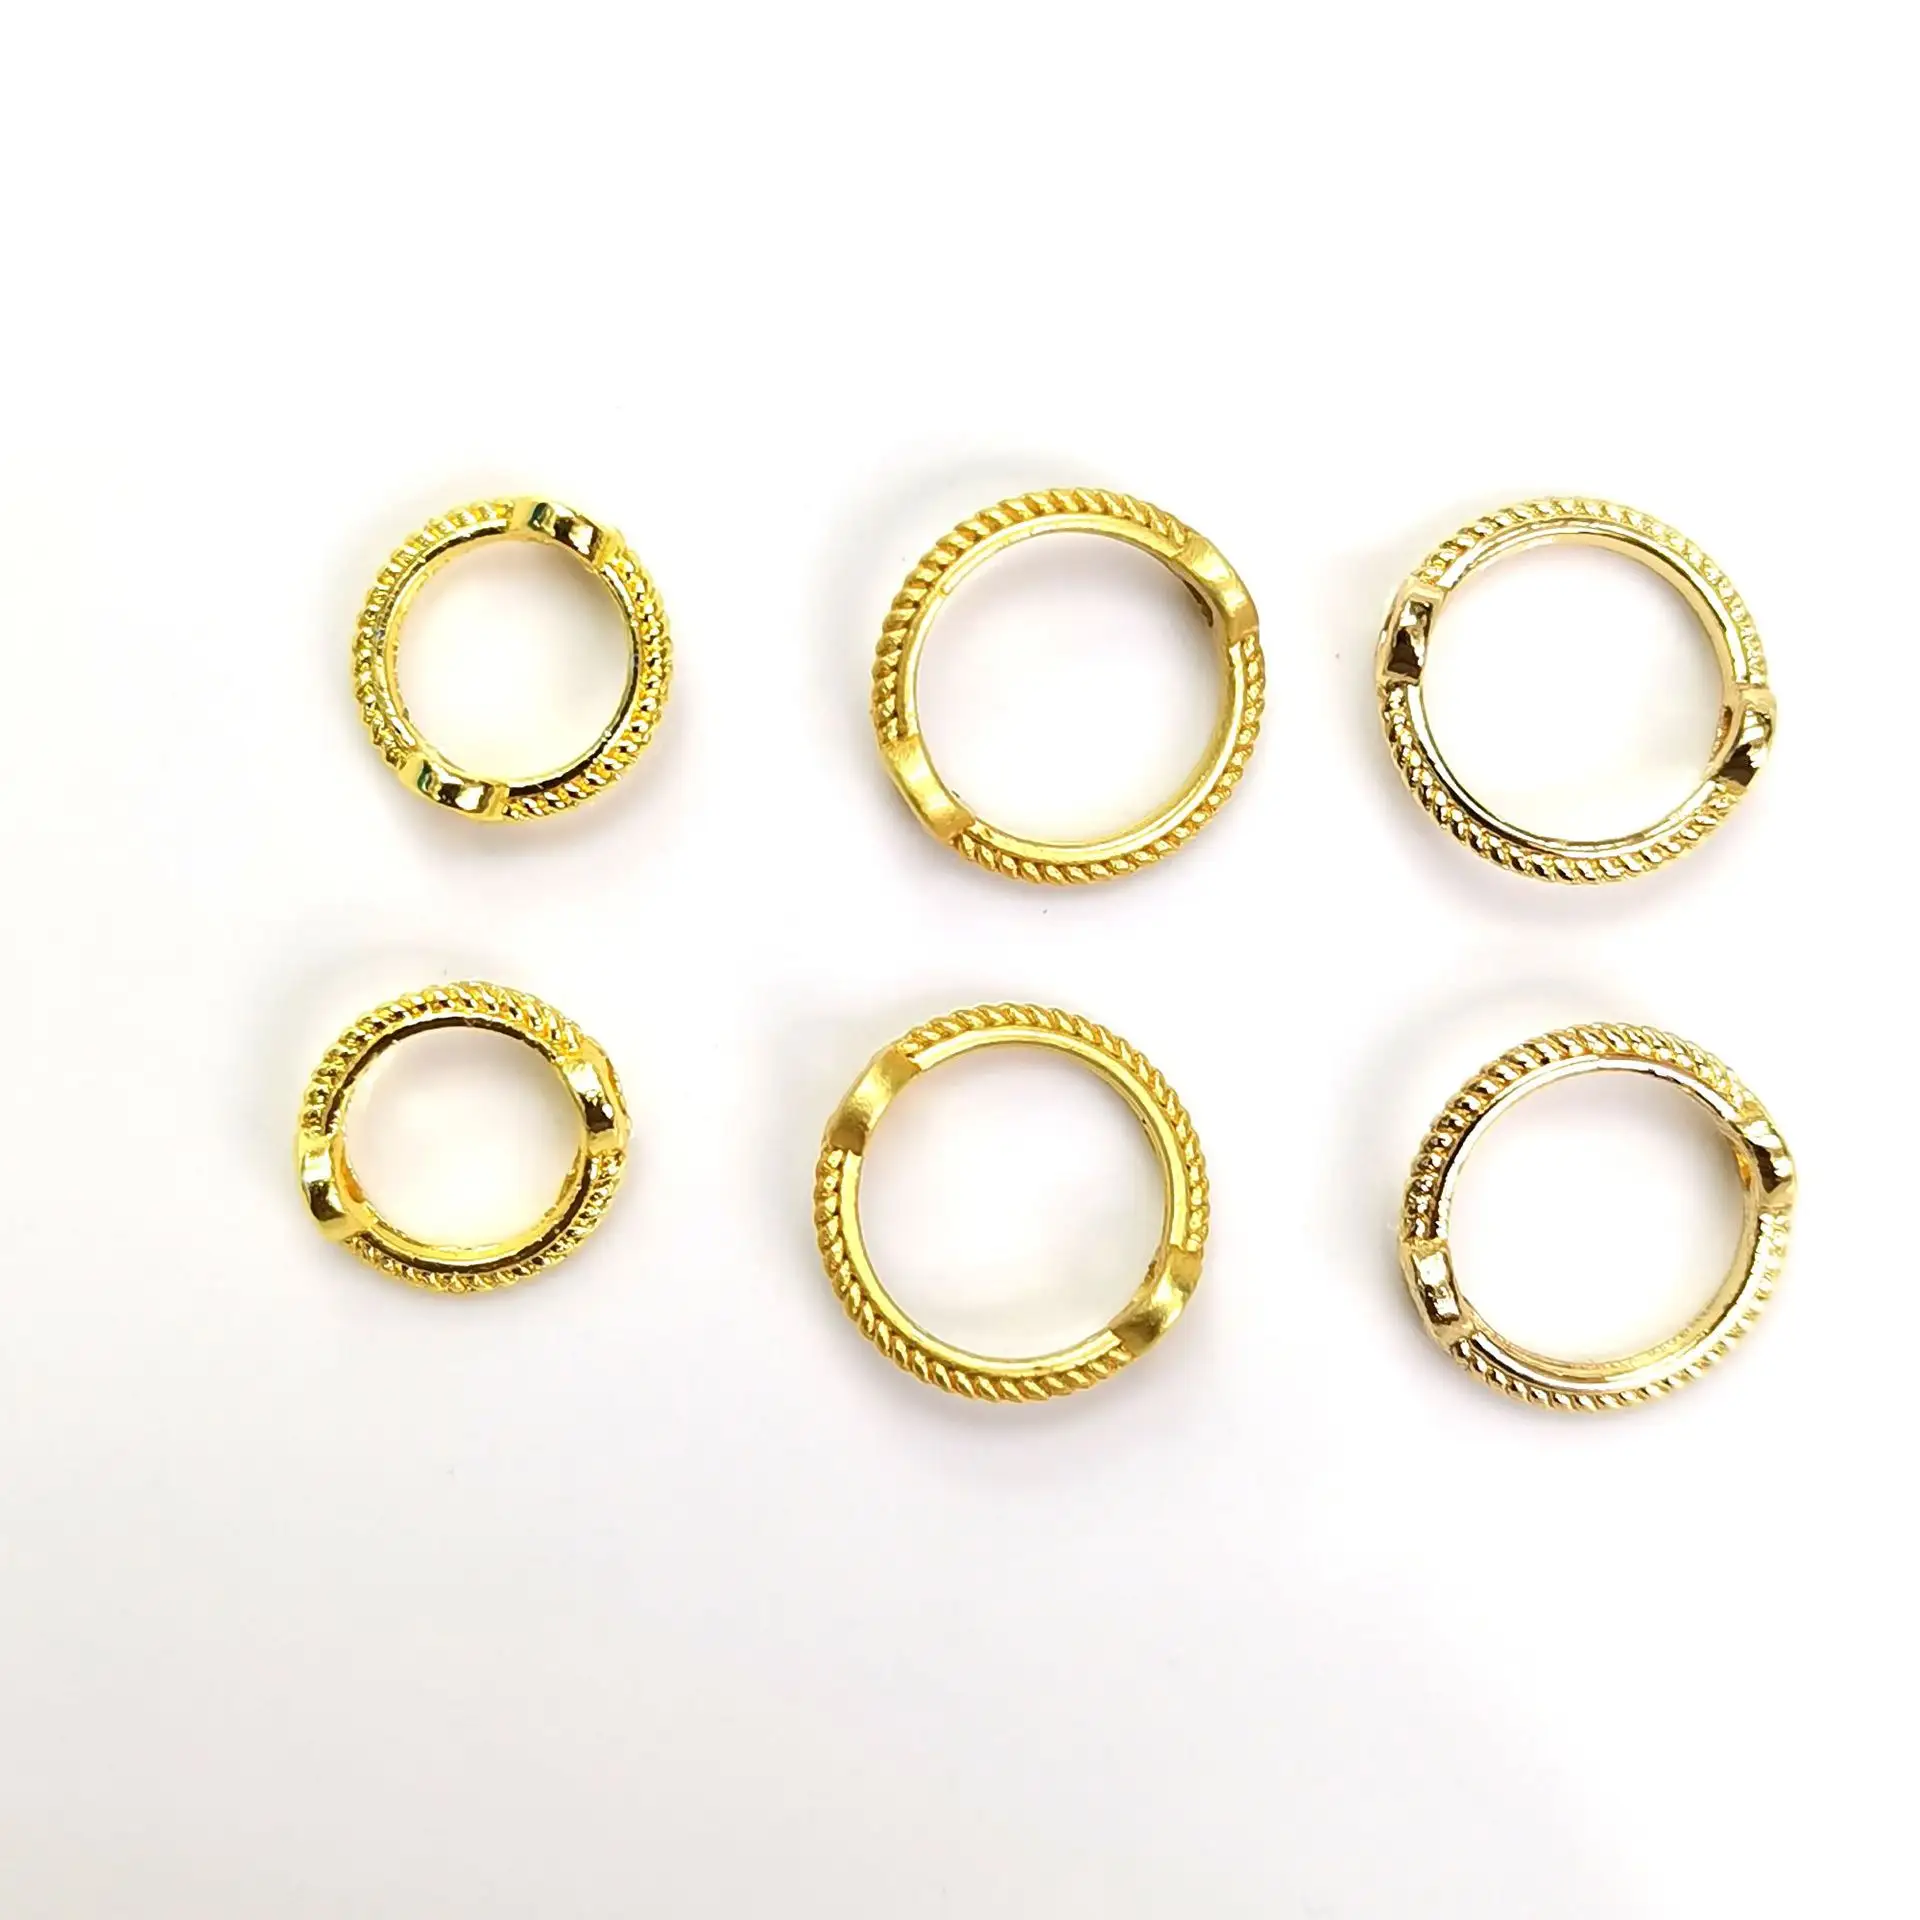 Kovict Großhandel farbige runde 9mm 11mm 13mm Abstand runde Metall eingelegte Strass Perlen für DIY Schmuck herstellung